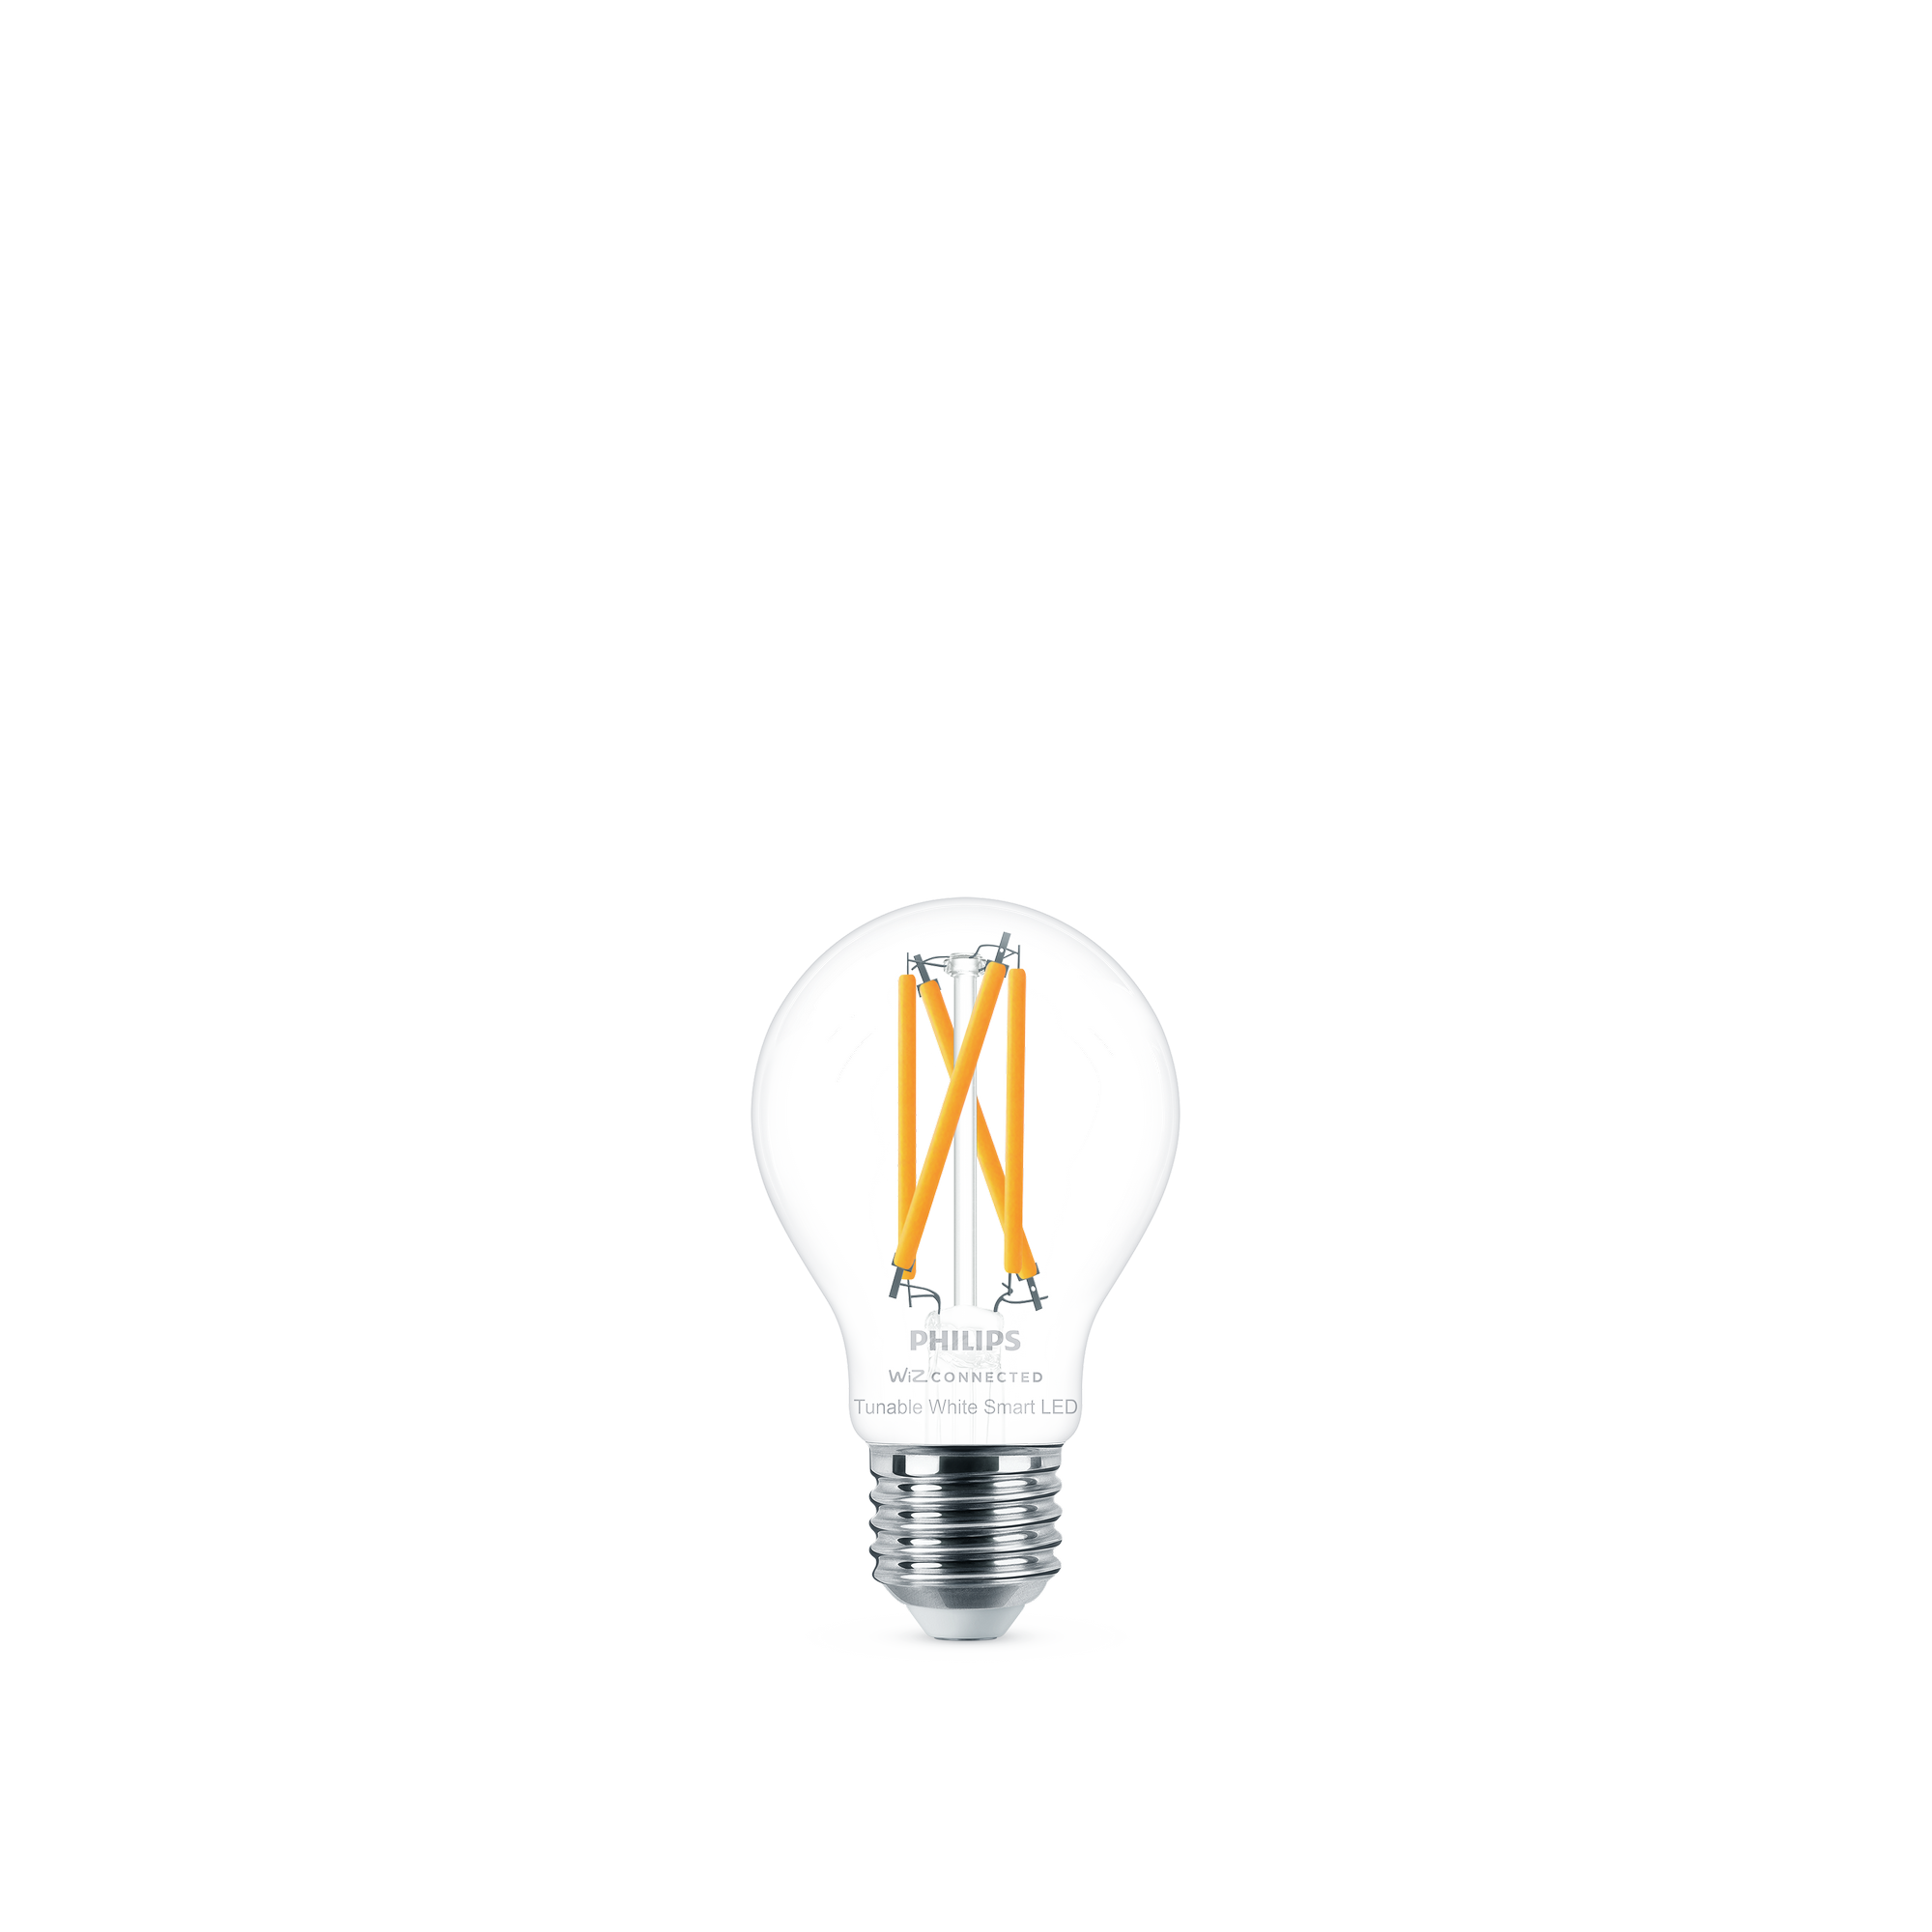 LED-Filament-Lampe 'SmartLED' 806 lm E27 Glühlampe klar + product picture